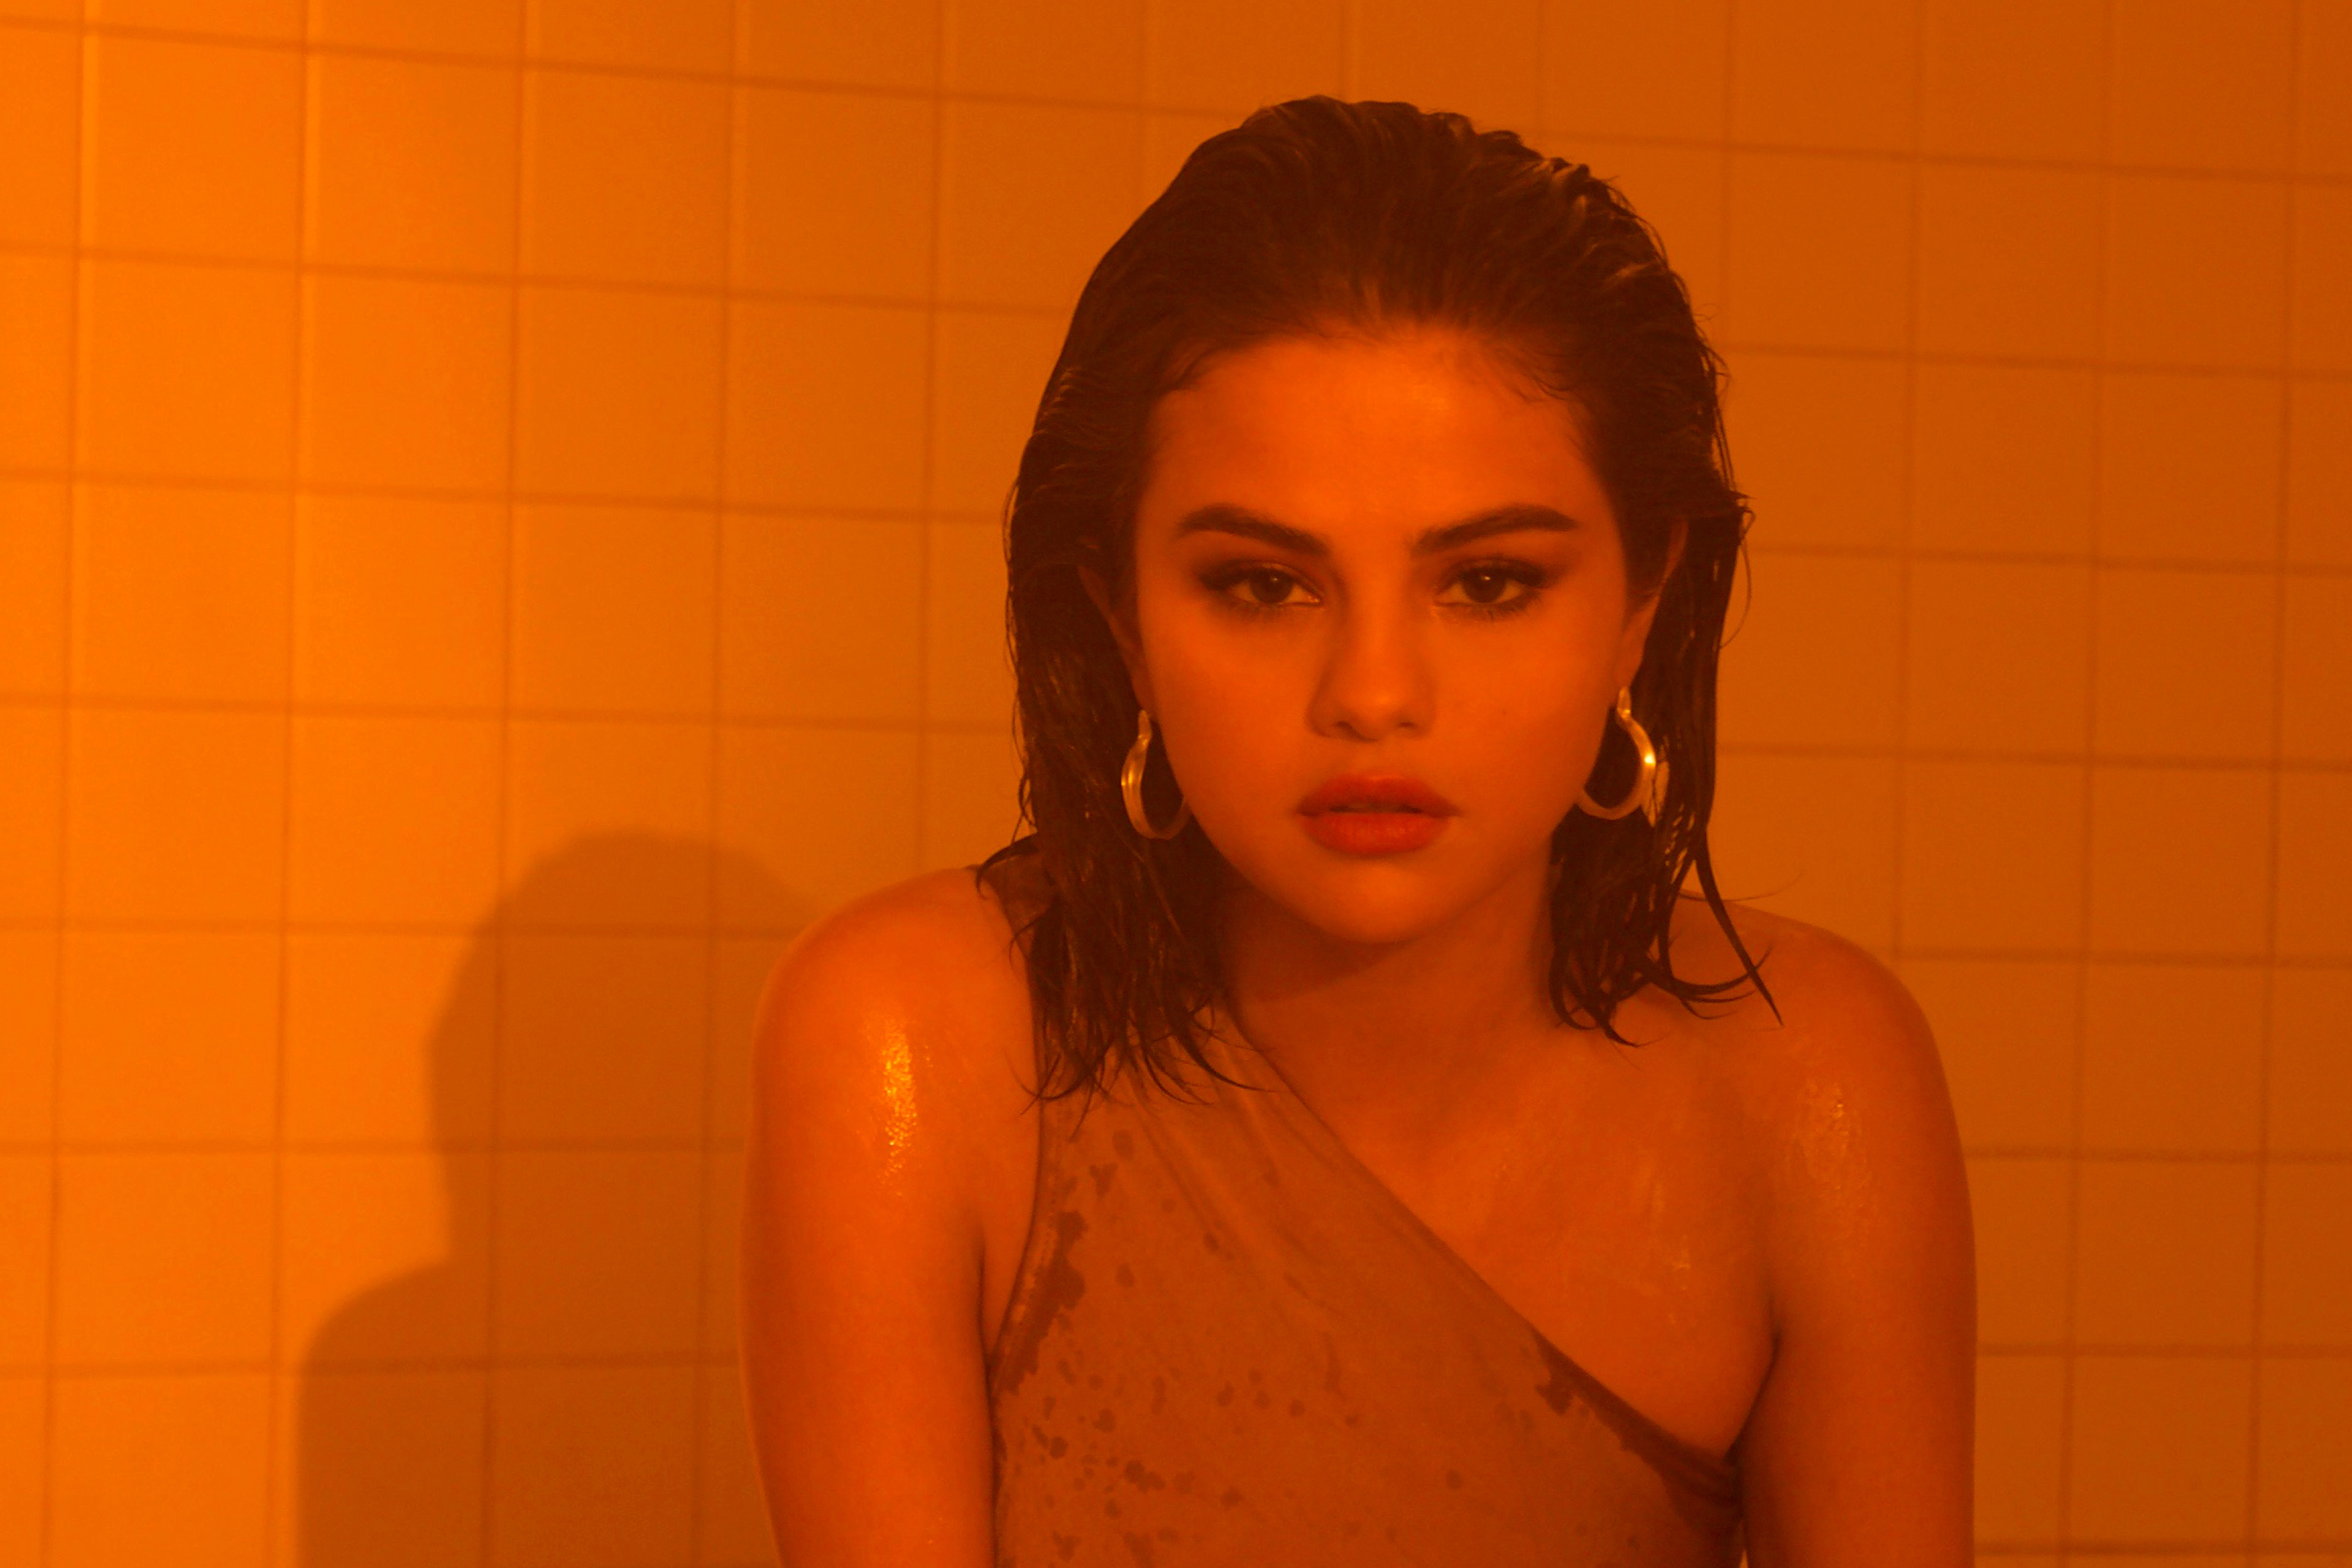 Selena Gomez 2017 Instyle Photoshoot Wallpapers